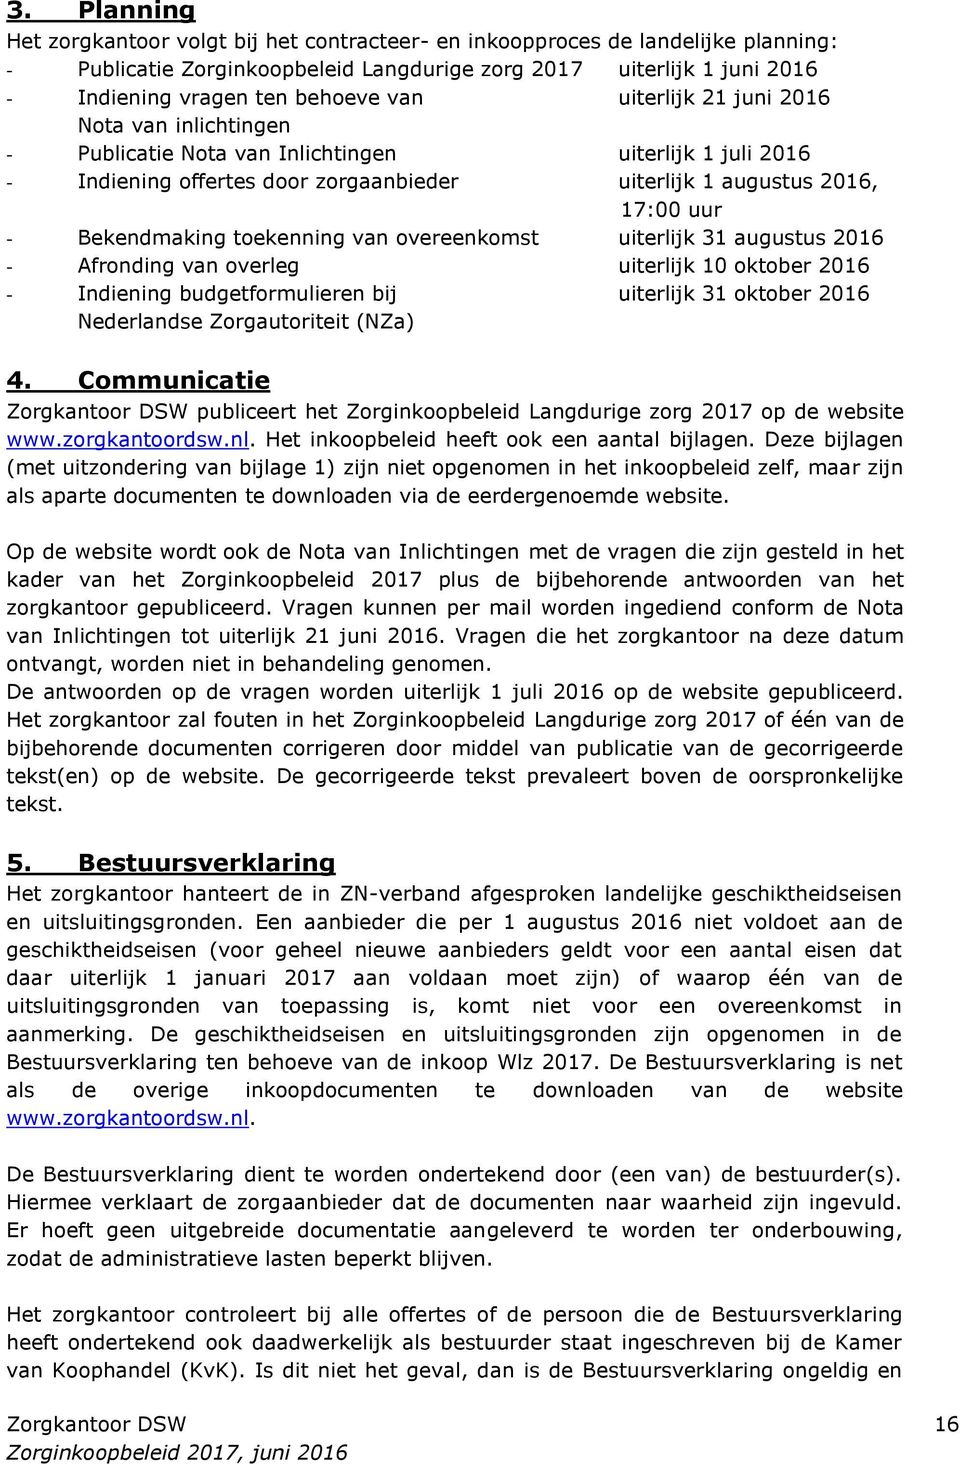 toekenning van overeenkomst uiterlijk 31 augustus 2016 - Afronding van overleg uiterlijk 10 oktober 2016 - Indiening budgetformulieren bij uiterlijk 31 oktober 2016 Nederlandse Zorgautoriteit (NZa) 4.